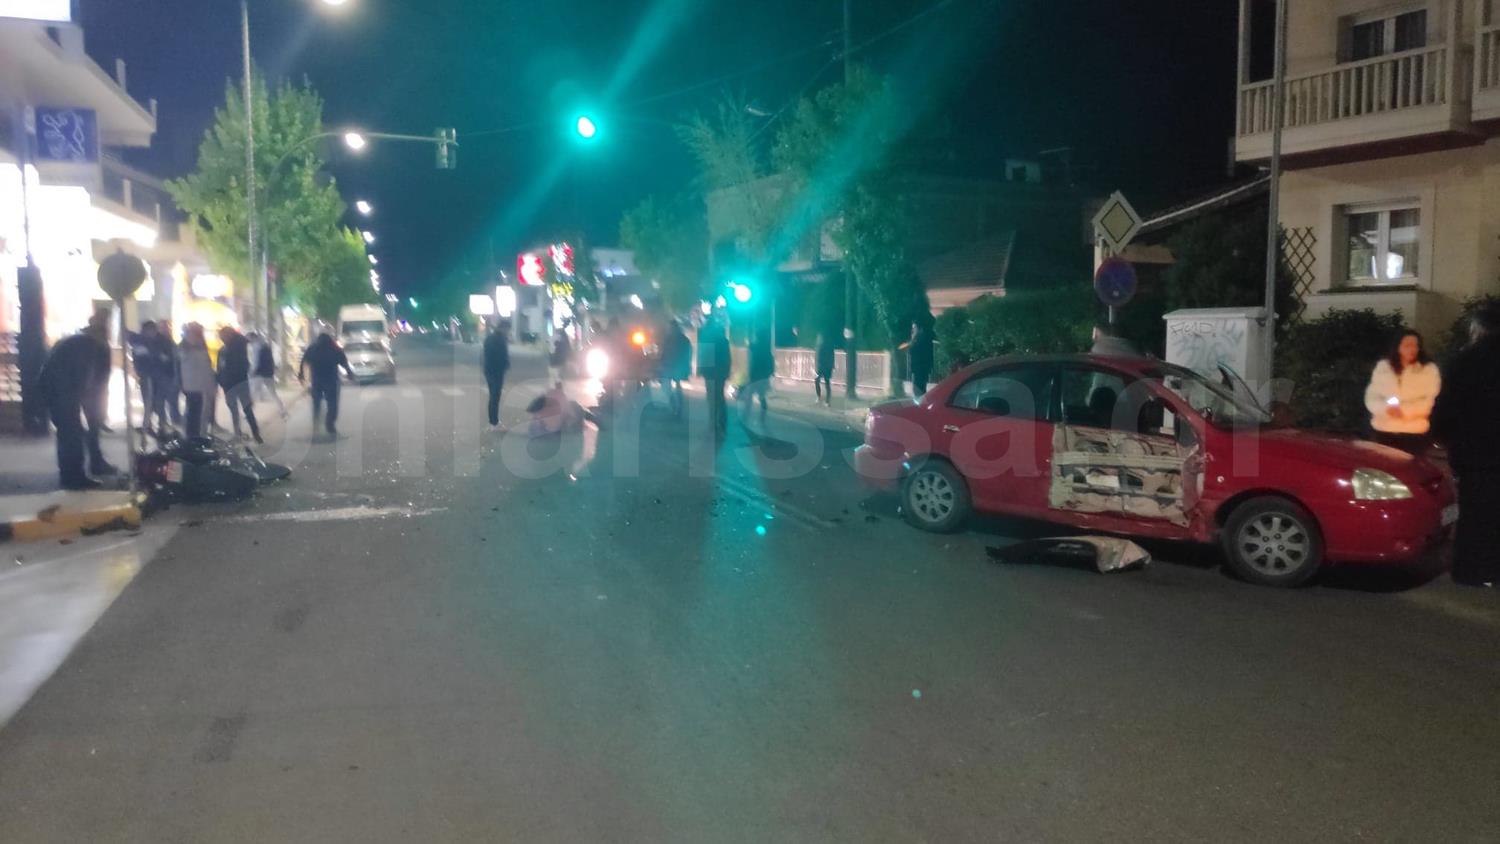 Σοβαρό τροχαίο στην οδό Βόλου - Μηχανή συγκρούστηκε με αυτοκίνητο (φωτο)